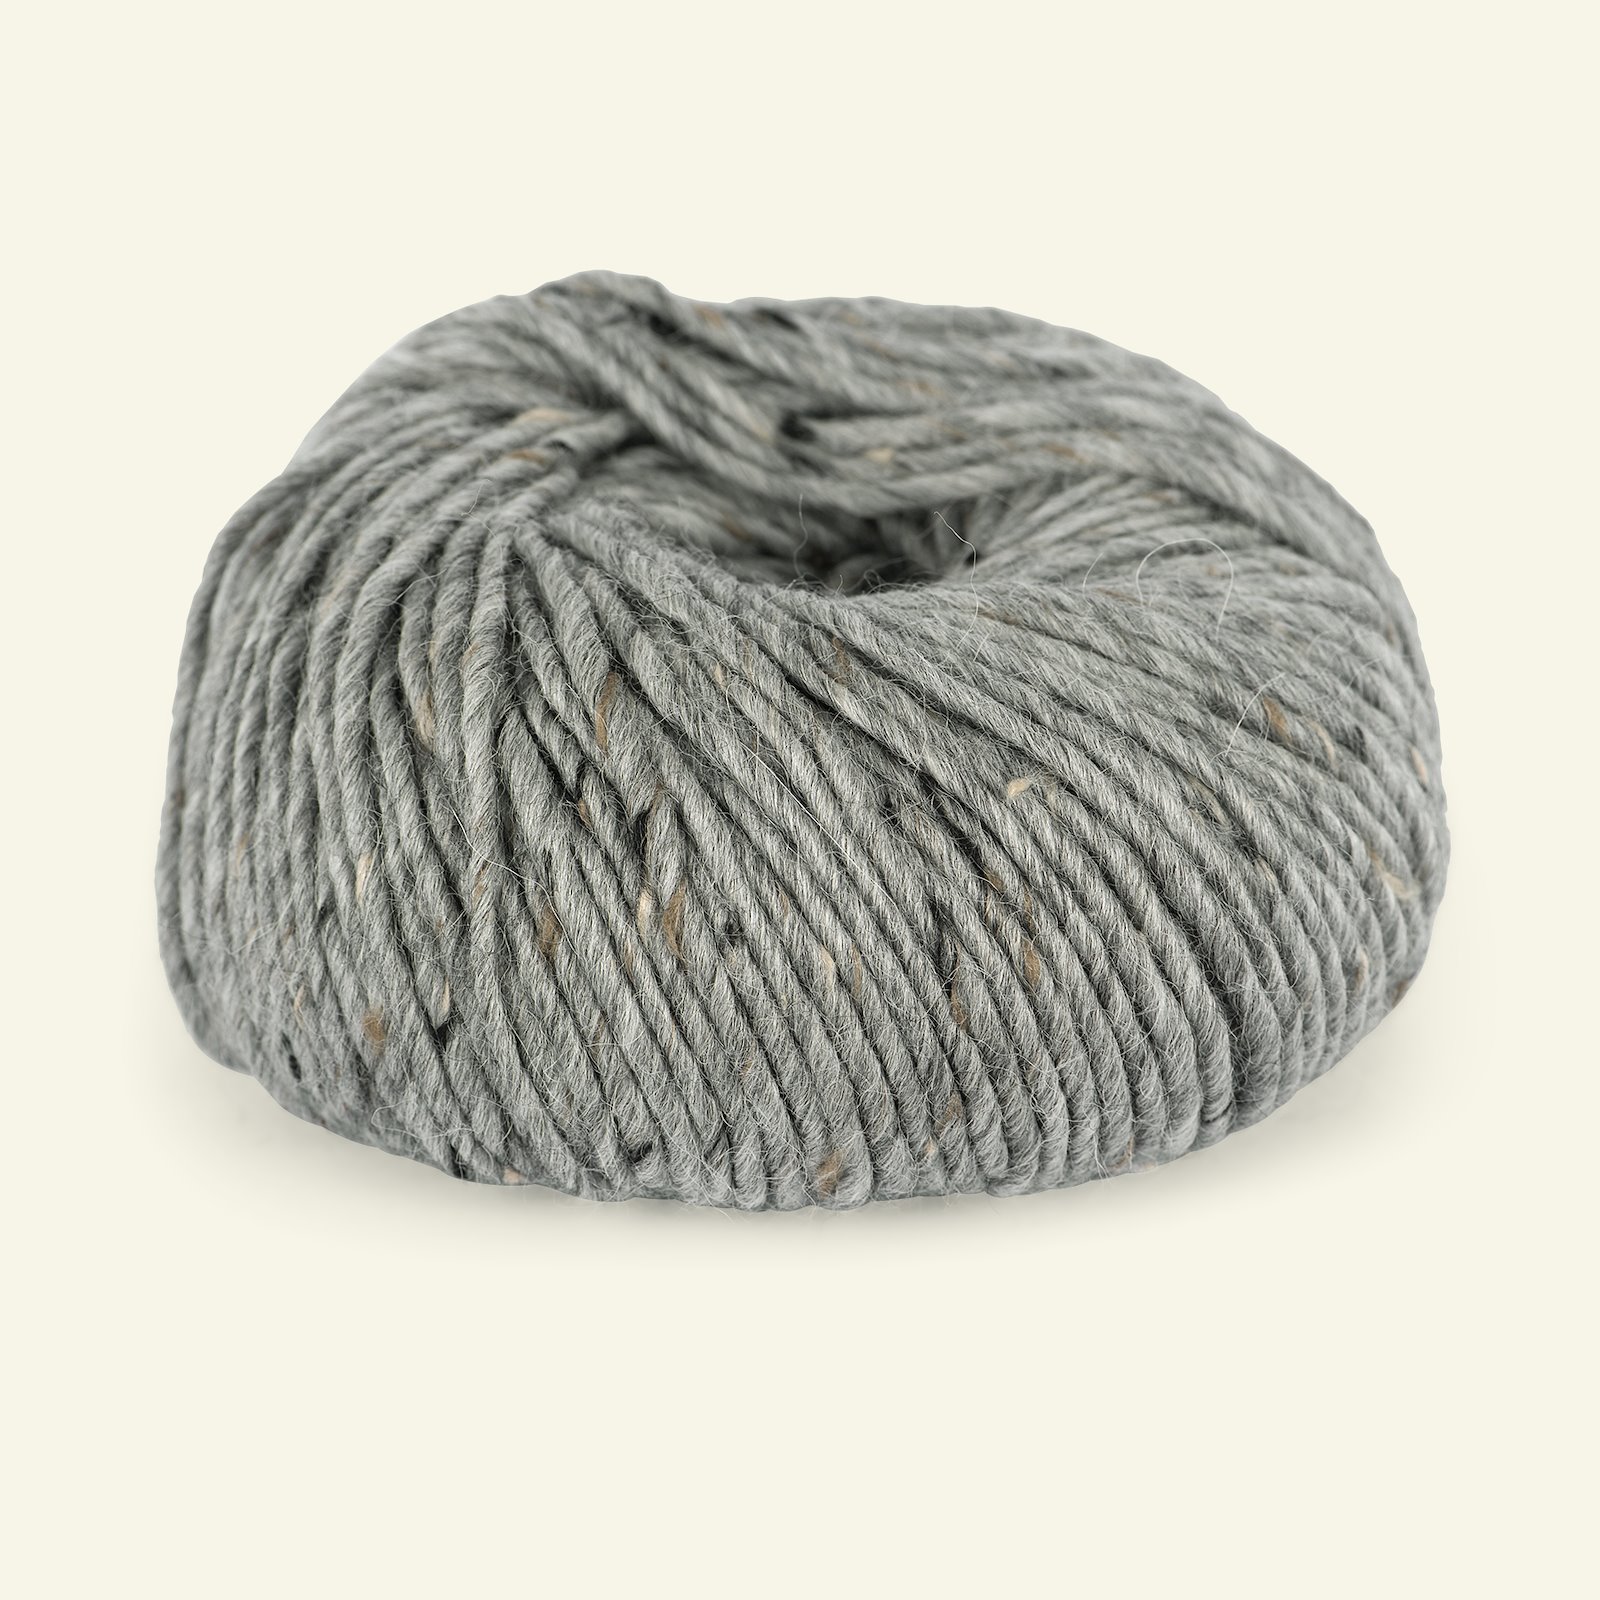 Du Store Alpakka, tweed wool yarn "Alpakka Tweed", grey (101) 90000520_pack_b